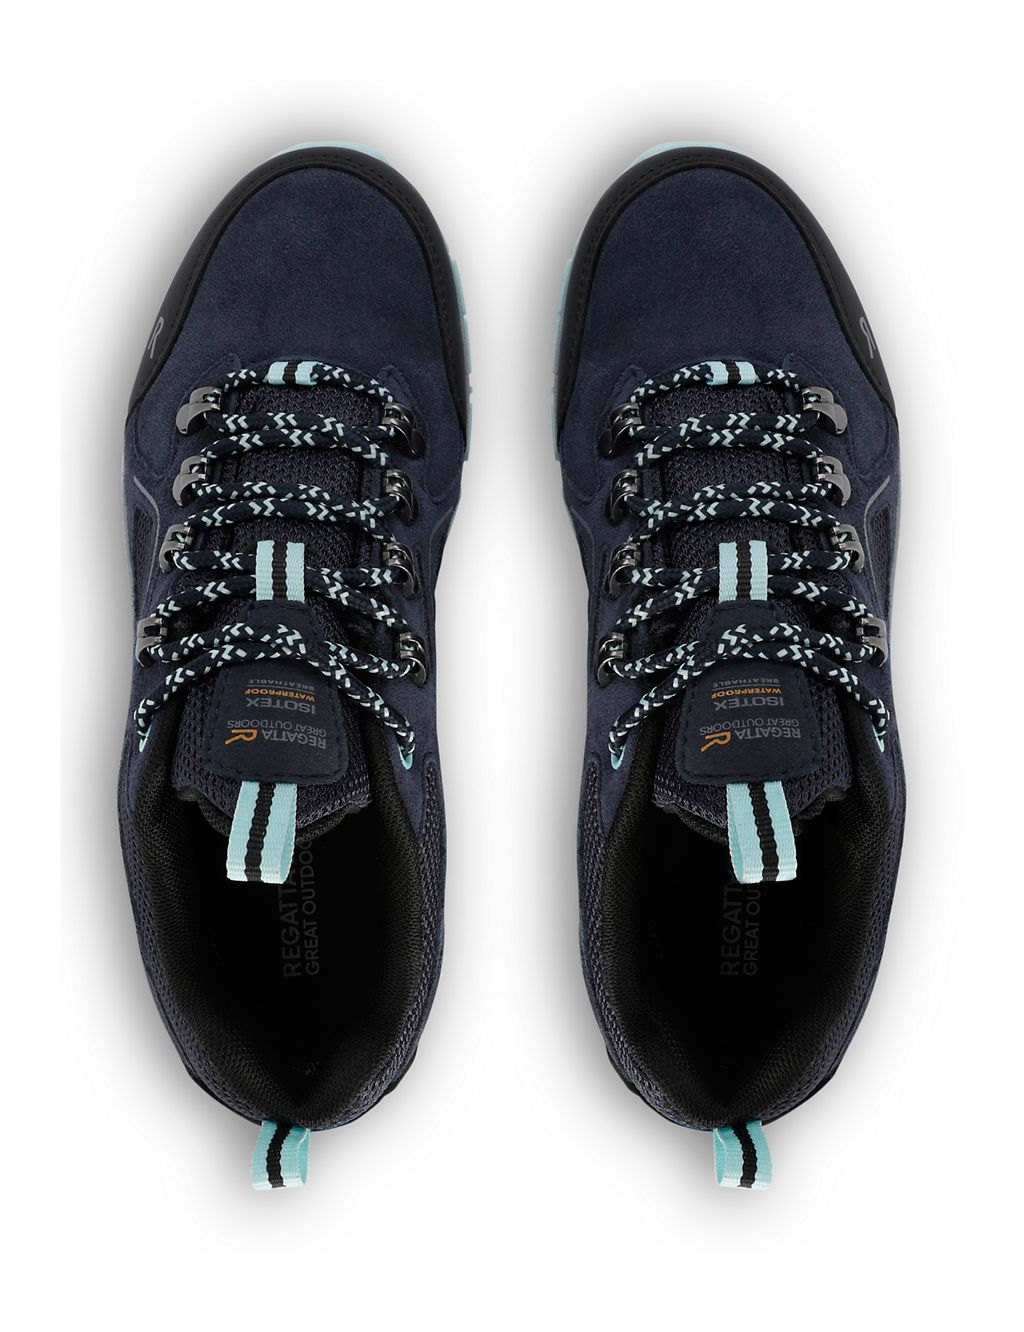 Vendeavour Suede Waterproof Walking Shoes 5 of 9